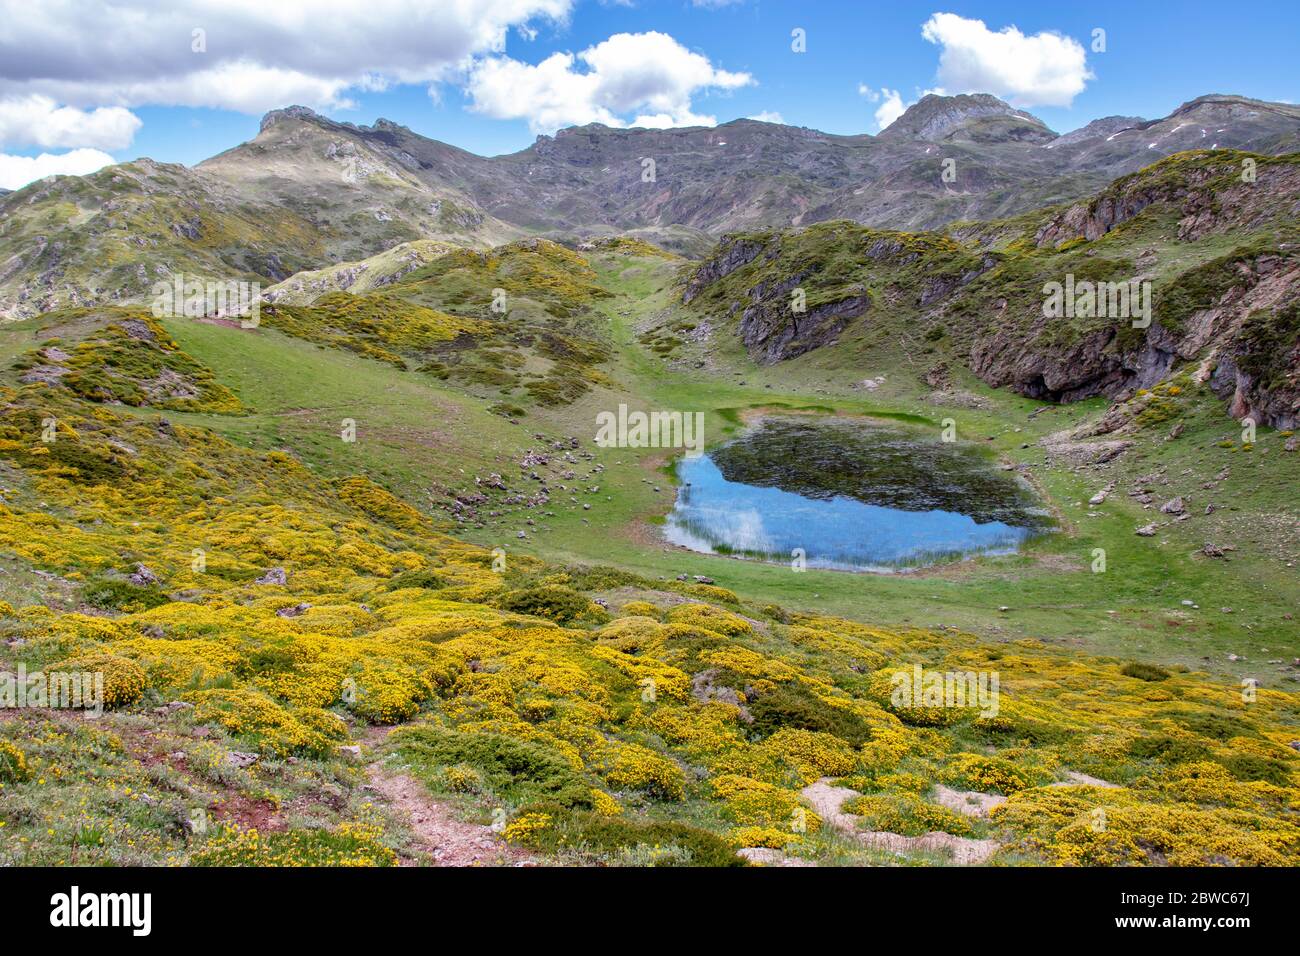 Laguna de Almagrera ou la Mina petit lac dans le parc national de Somiedo, Espagne, Asturies. Lacs glaciaires de Saliencia. Genista occidentalis fleurs jaunes Banque D'Images